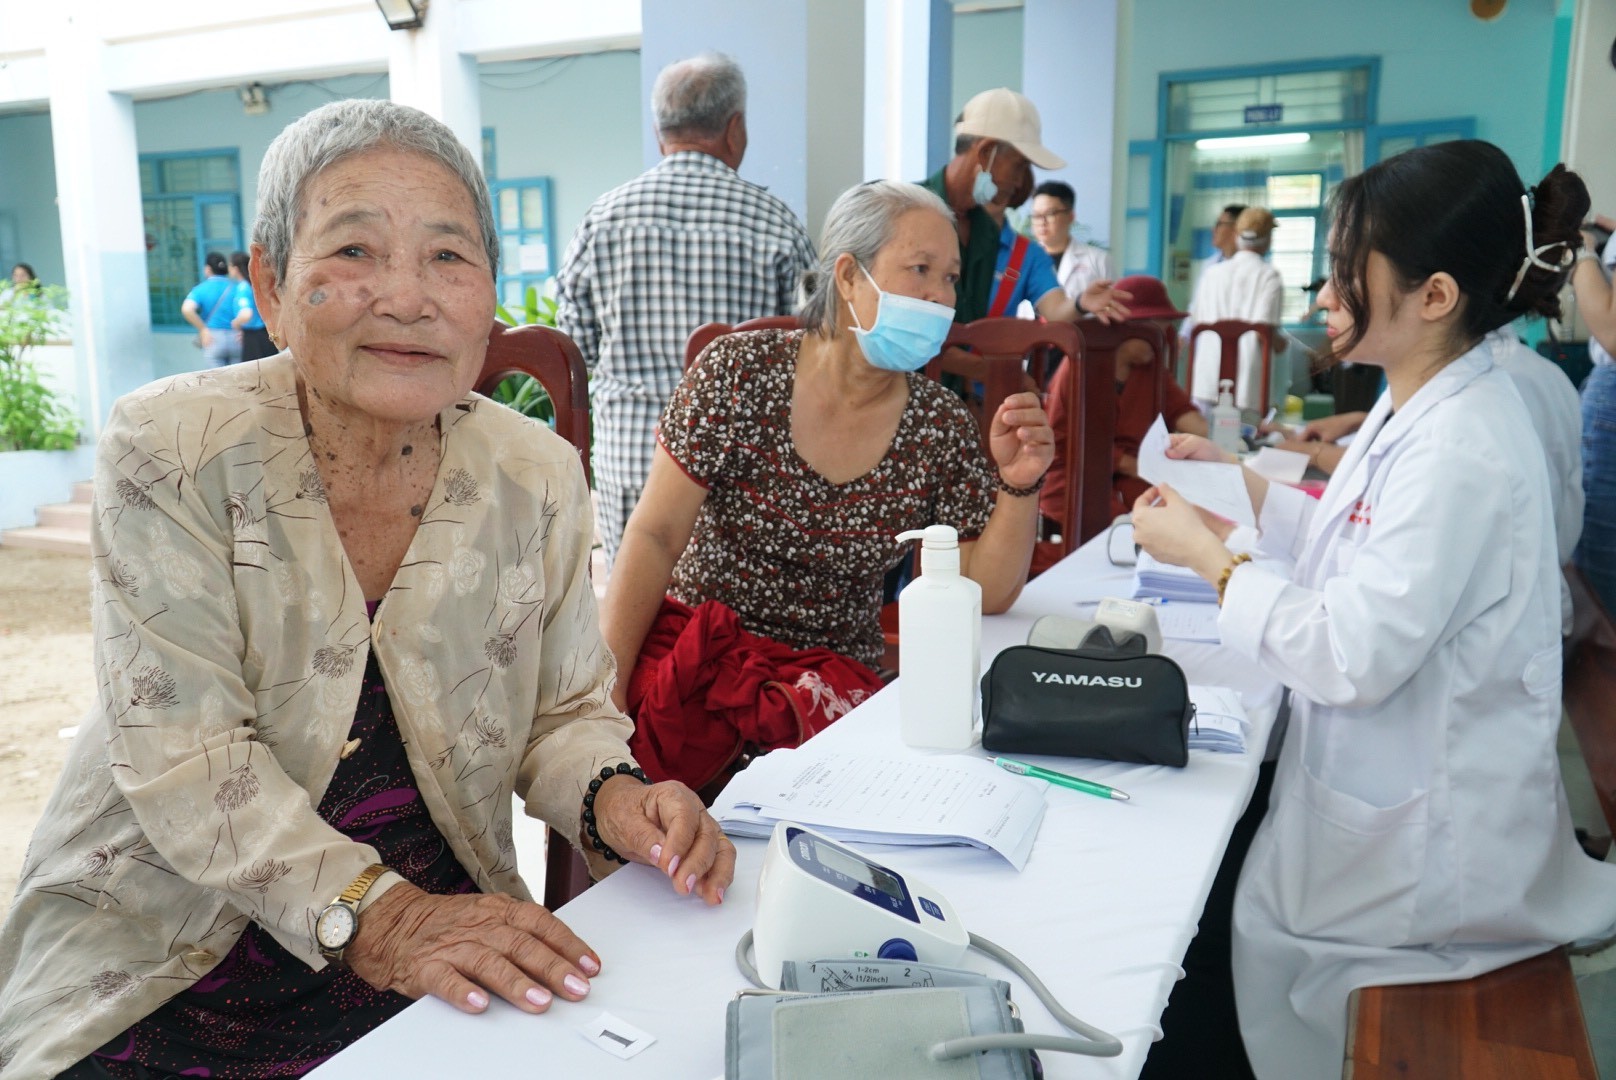 Chùm ảnh: Khám, phát thuốc miễn phí cho người dân Ninh Thuận ảnh 6